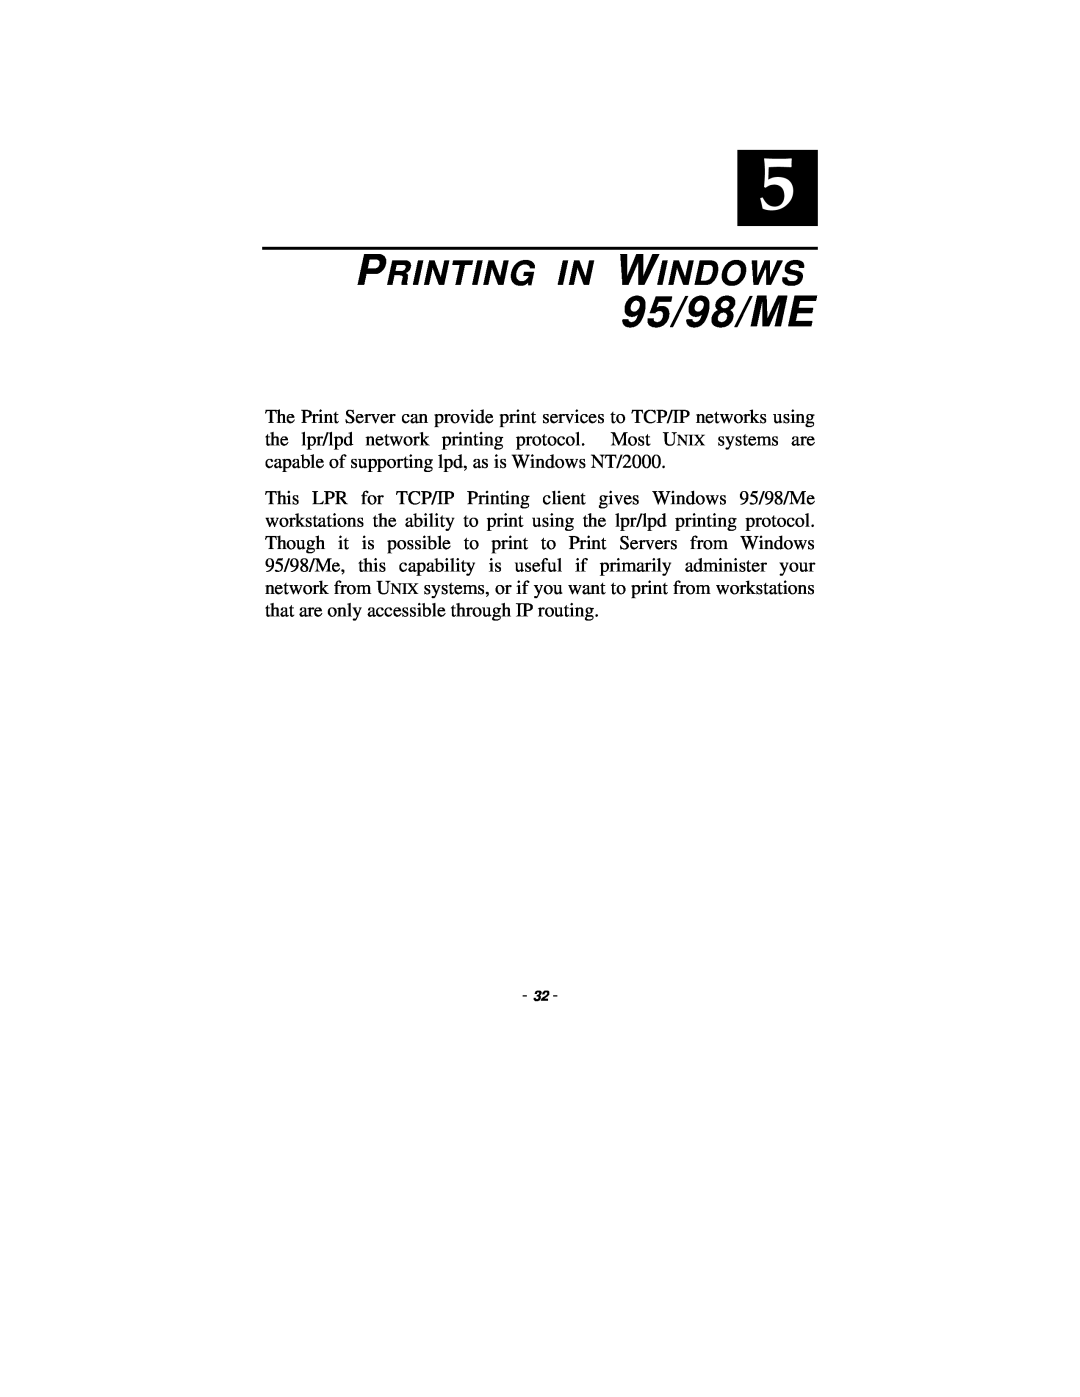 TRENDnet TE100-P1P manual 95/98/ME, Printing In Windows 